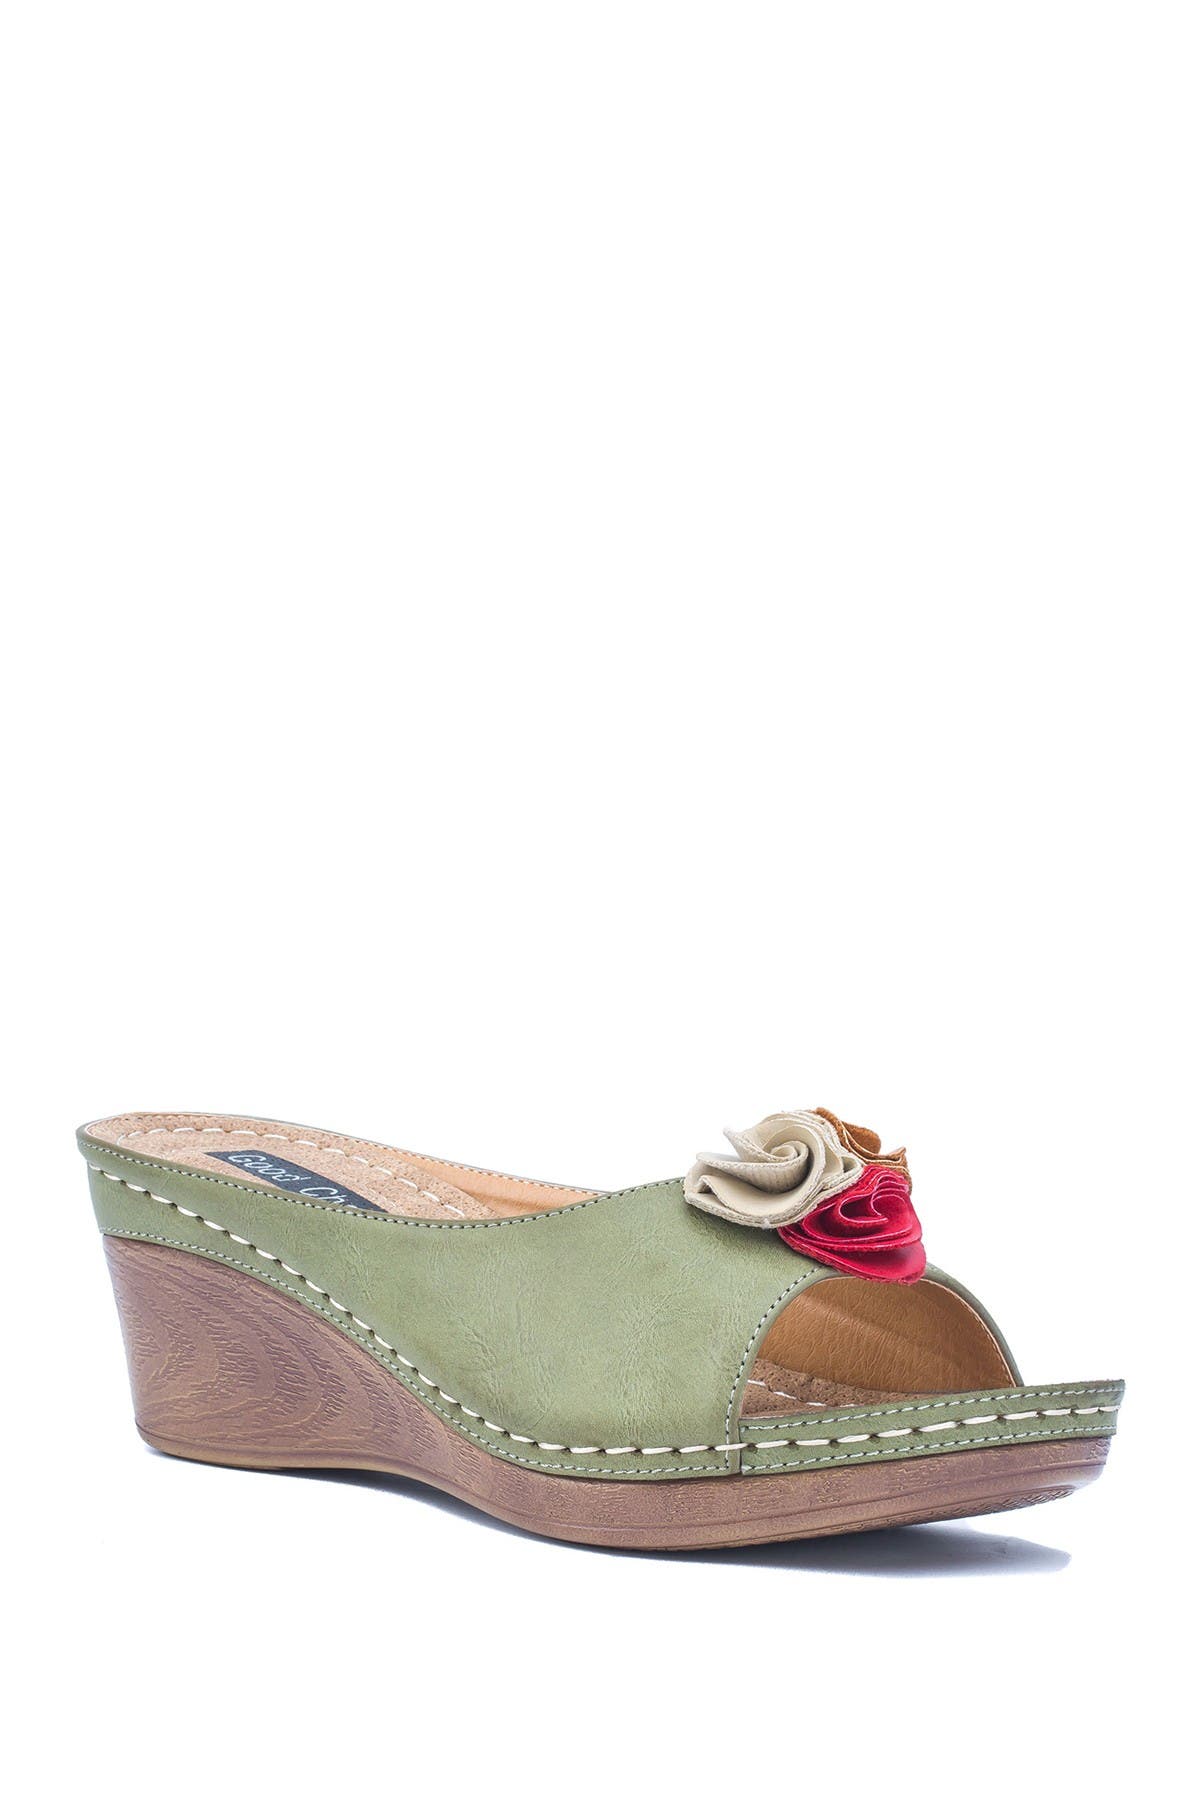 Gc Shoes Sydney Floral Platform Wedge Sandal In Green